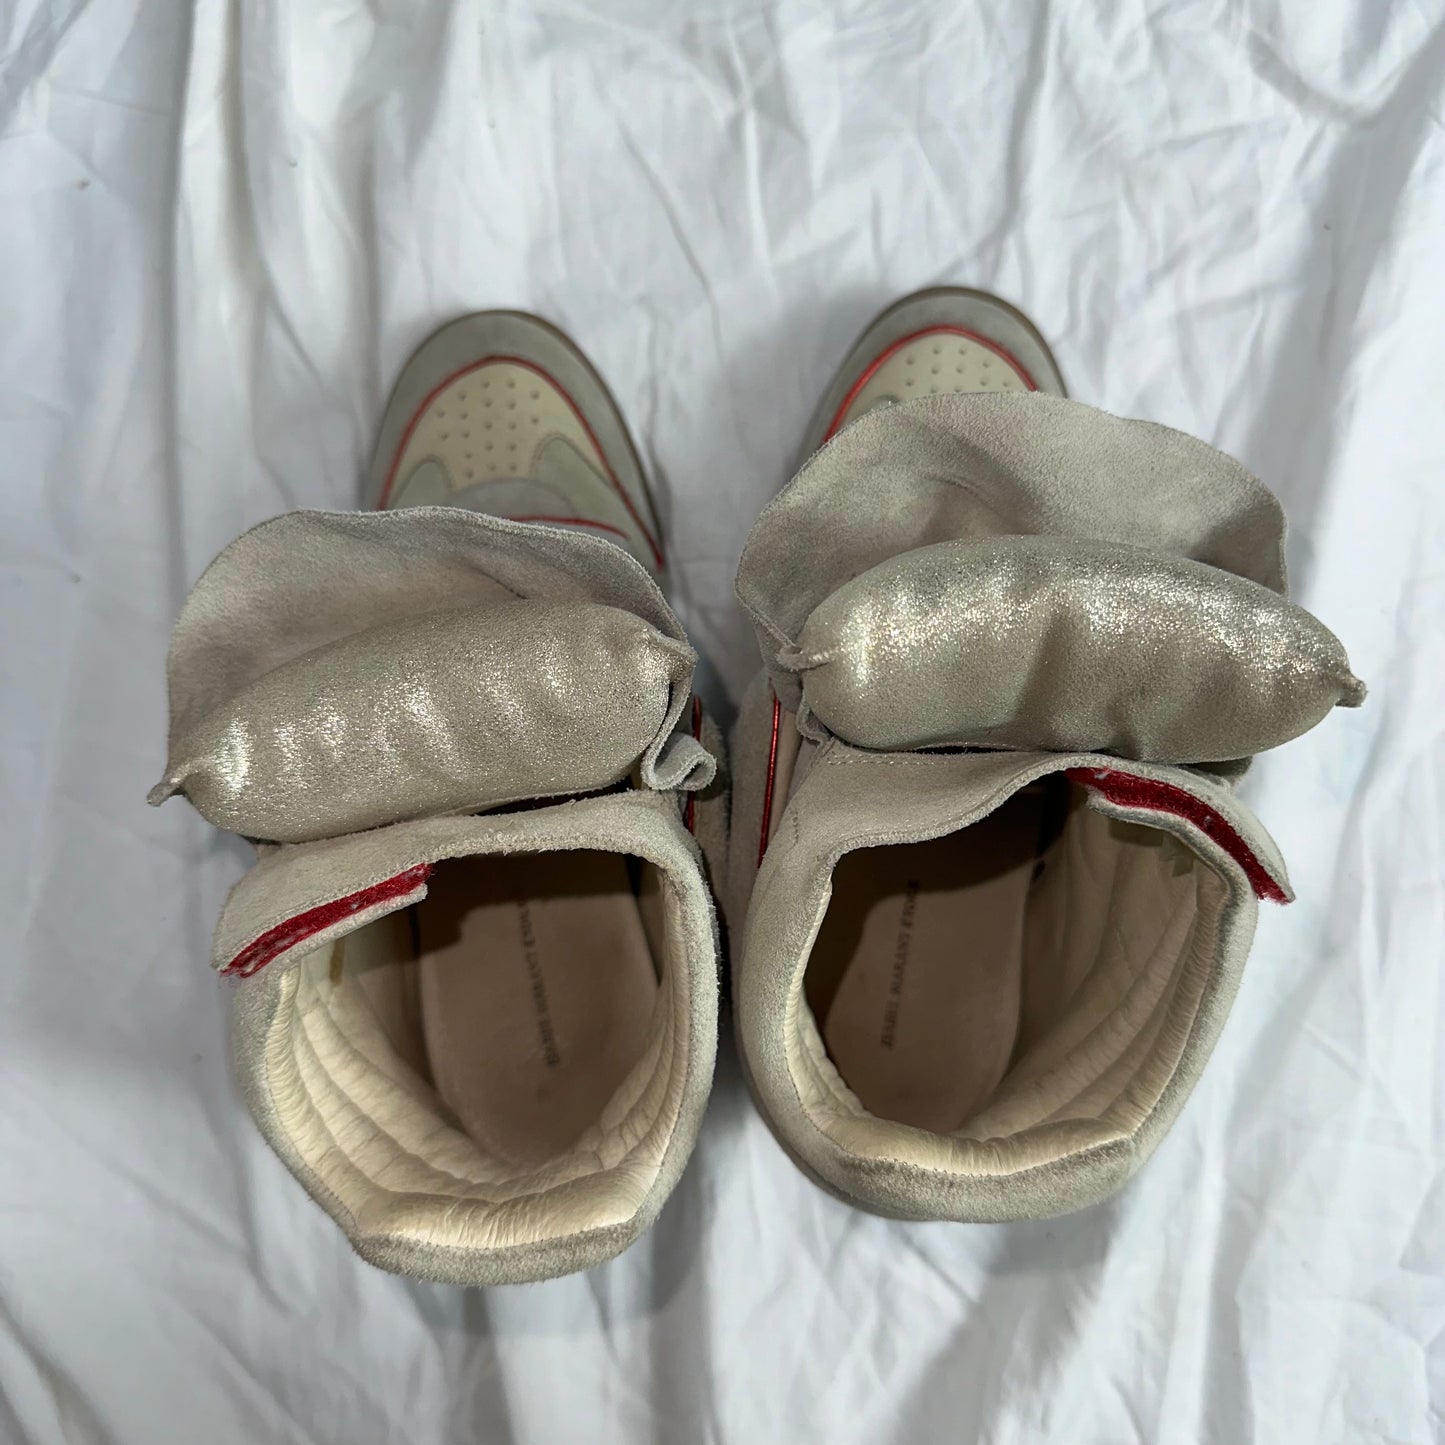 Isabel Marant Wedge Sneakers 37.5/38.5